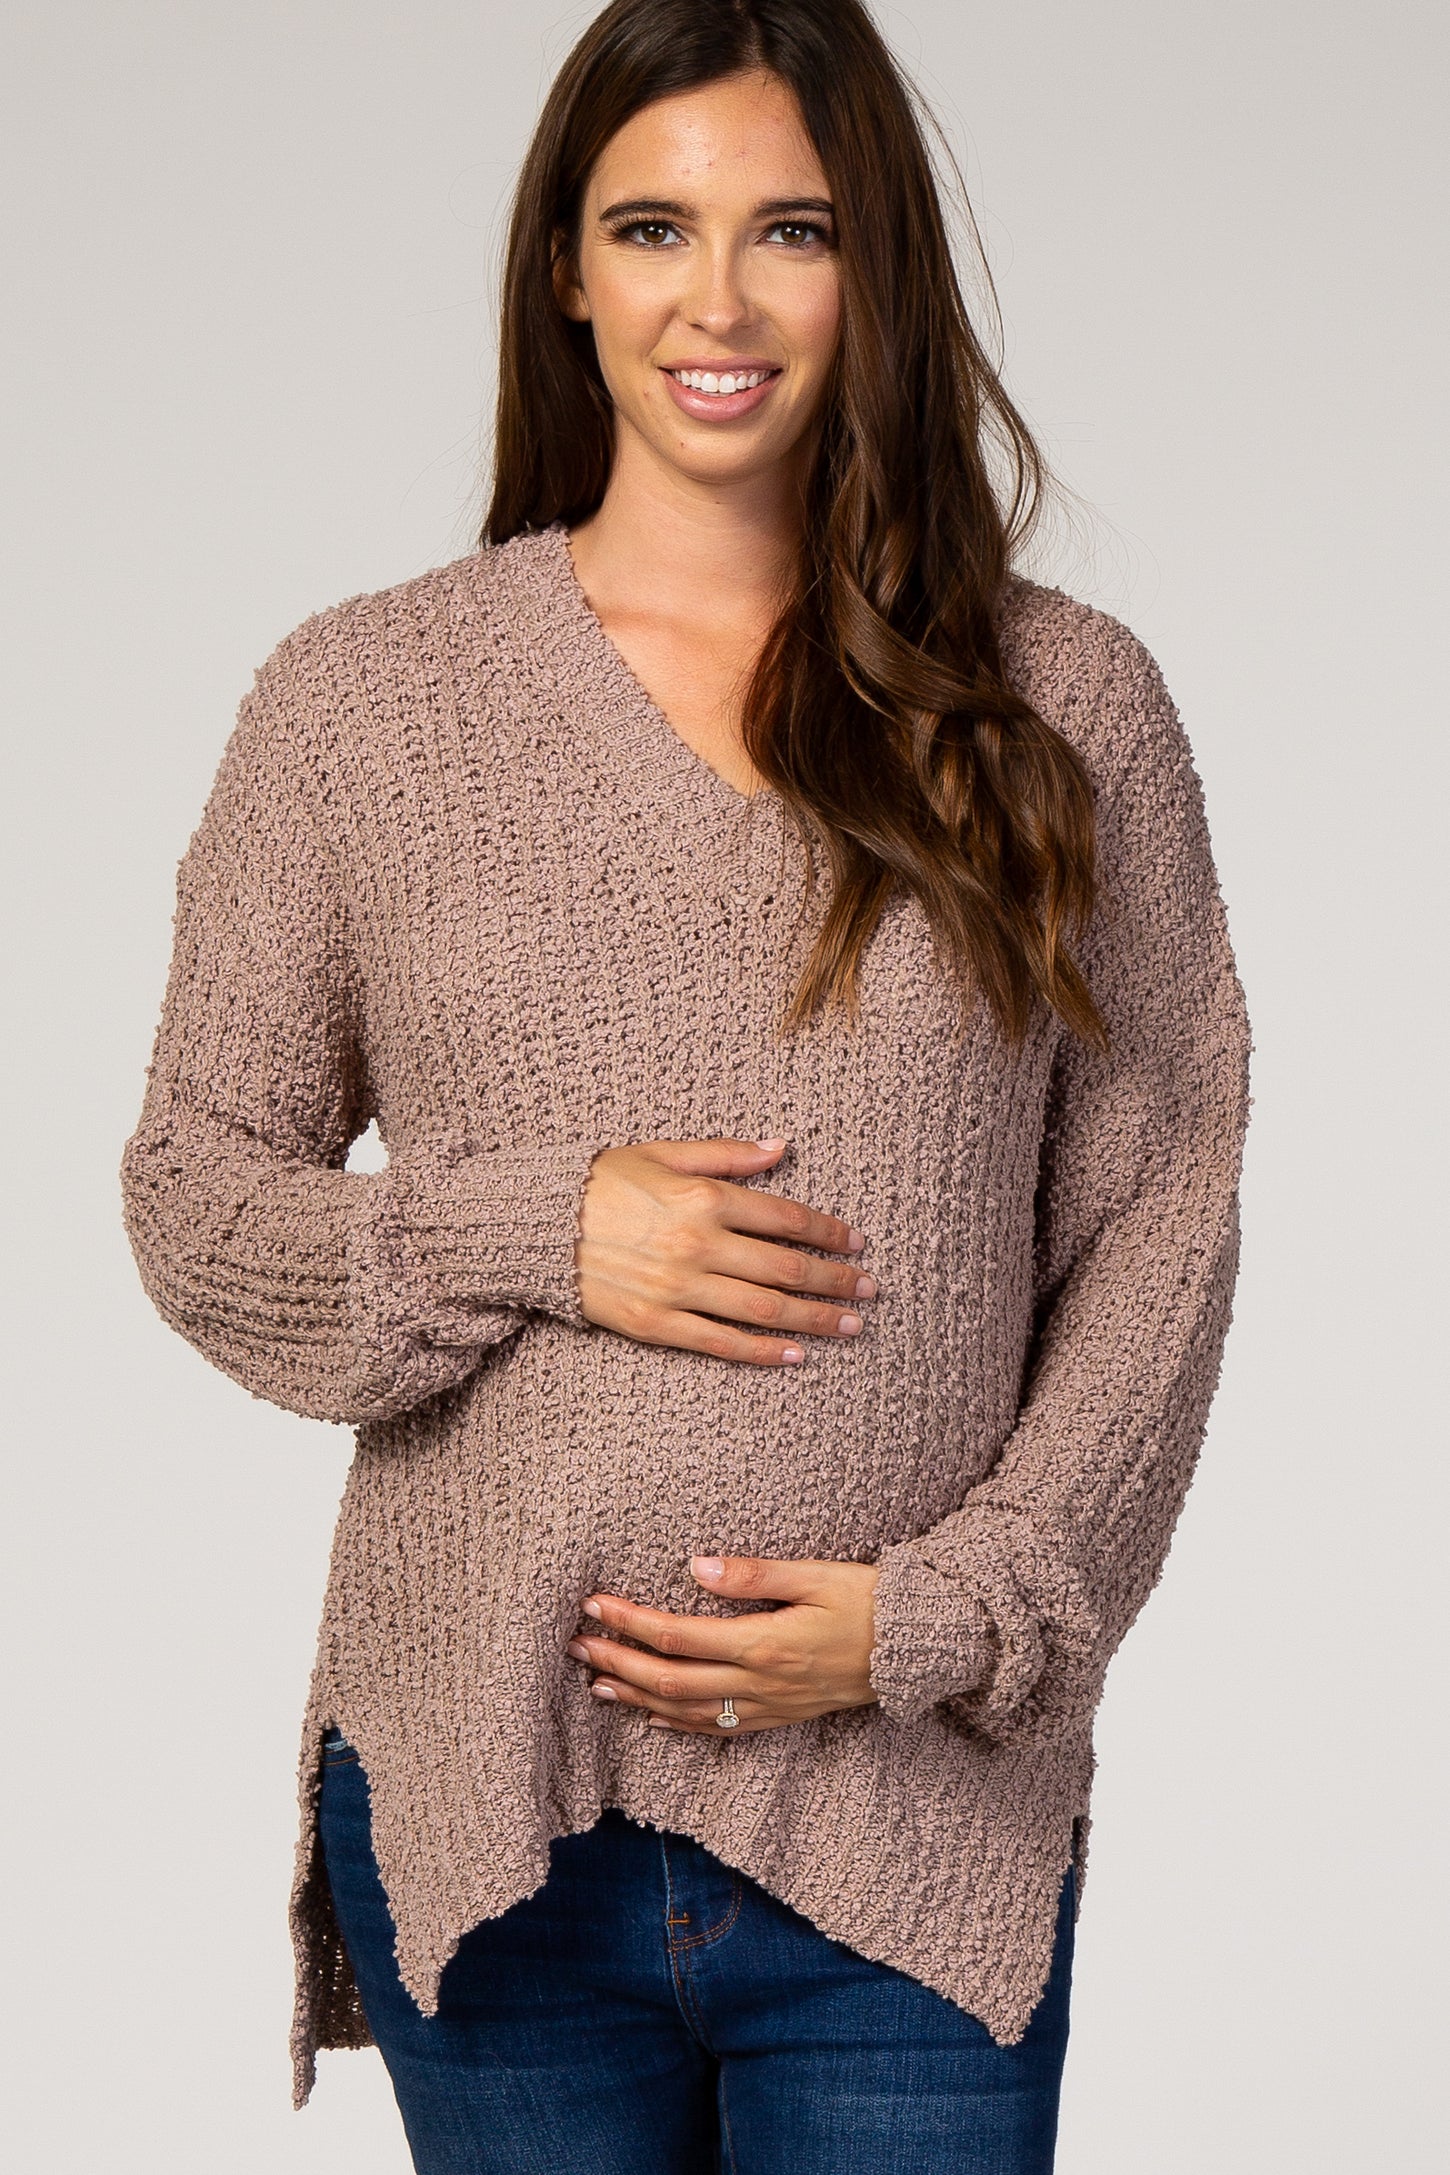 Mocha Popcorn Knit V-Neck Maternity Sweater